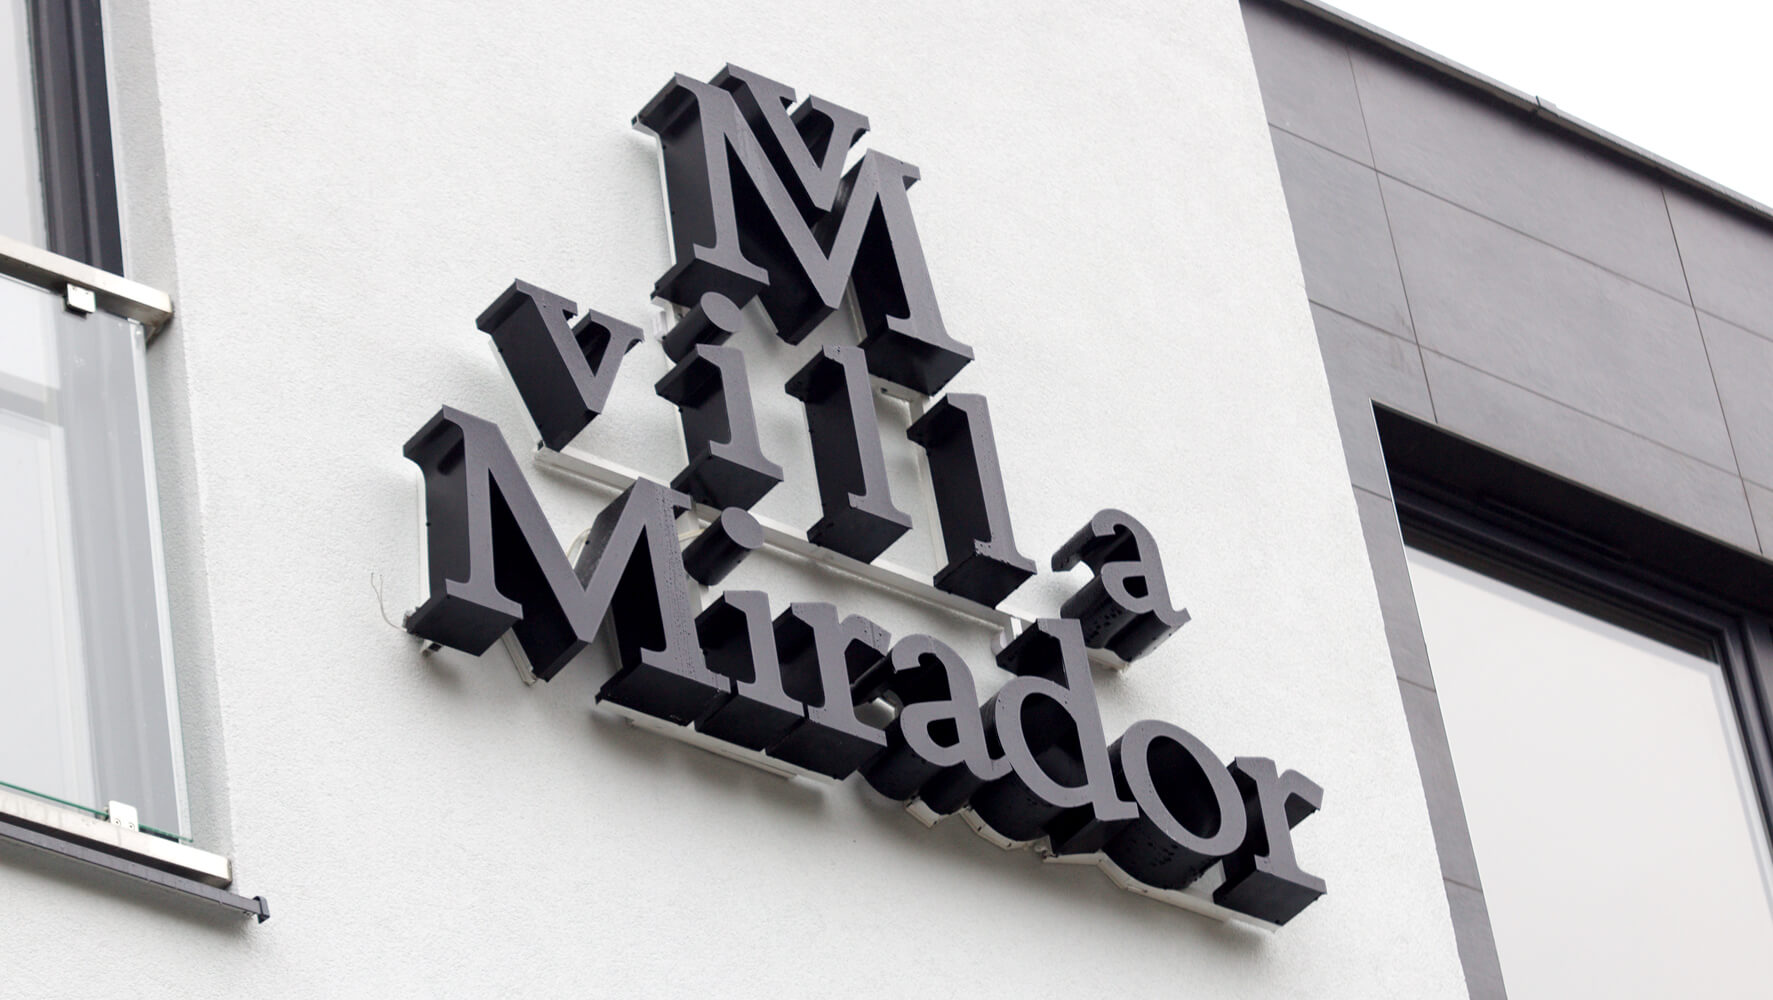 Villa Mirador - Villa Mirador - spatial luminous lettering placed on the elevation